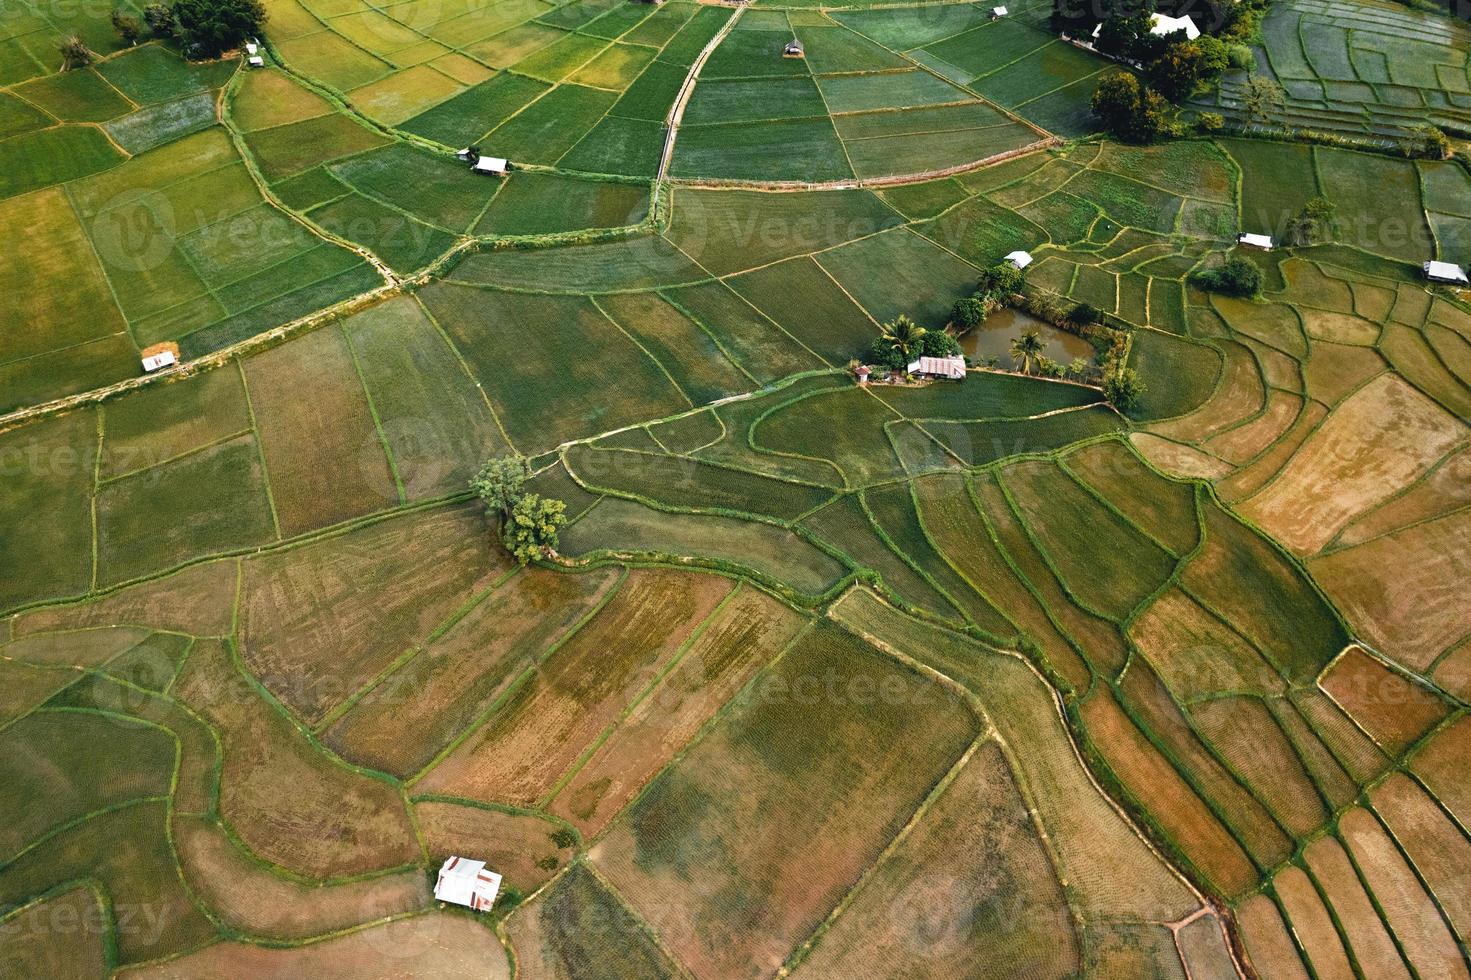 paesaggio risaia in asia, vista aerea delle risaie foto